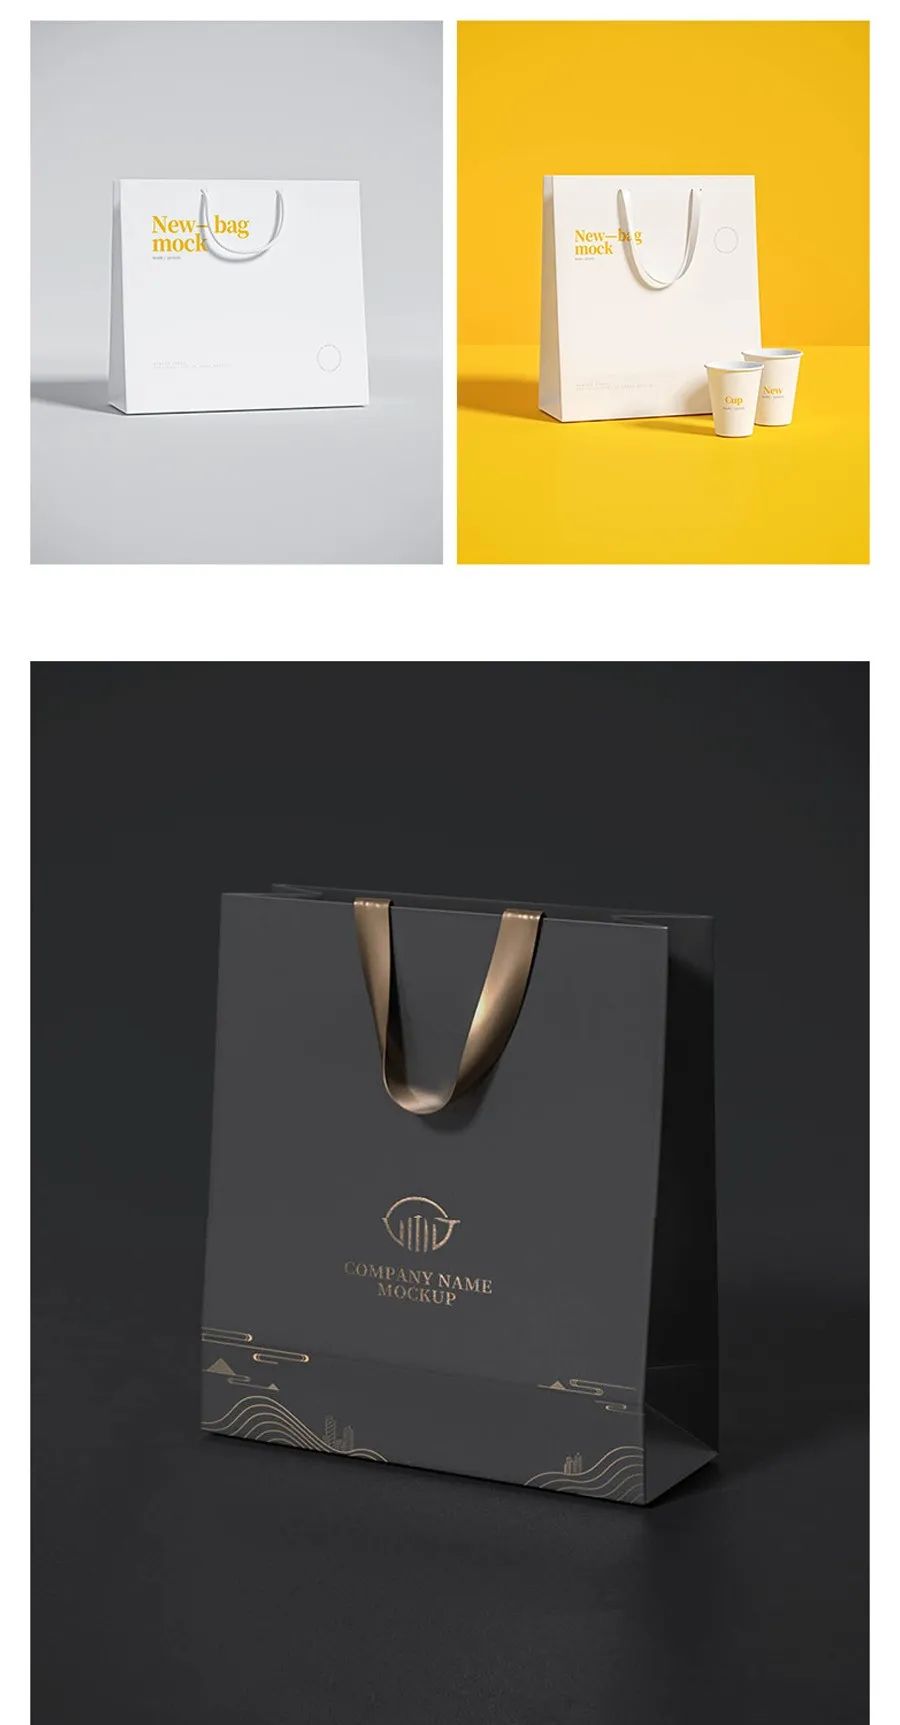 样机模板-精品高级咖啡文创品牌VI样机合集 图片素材 第16张